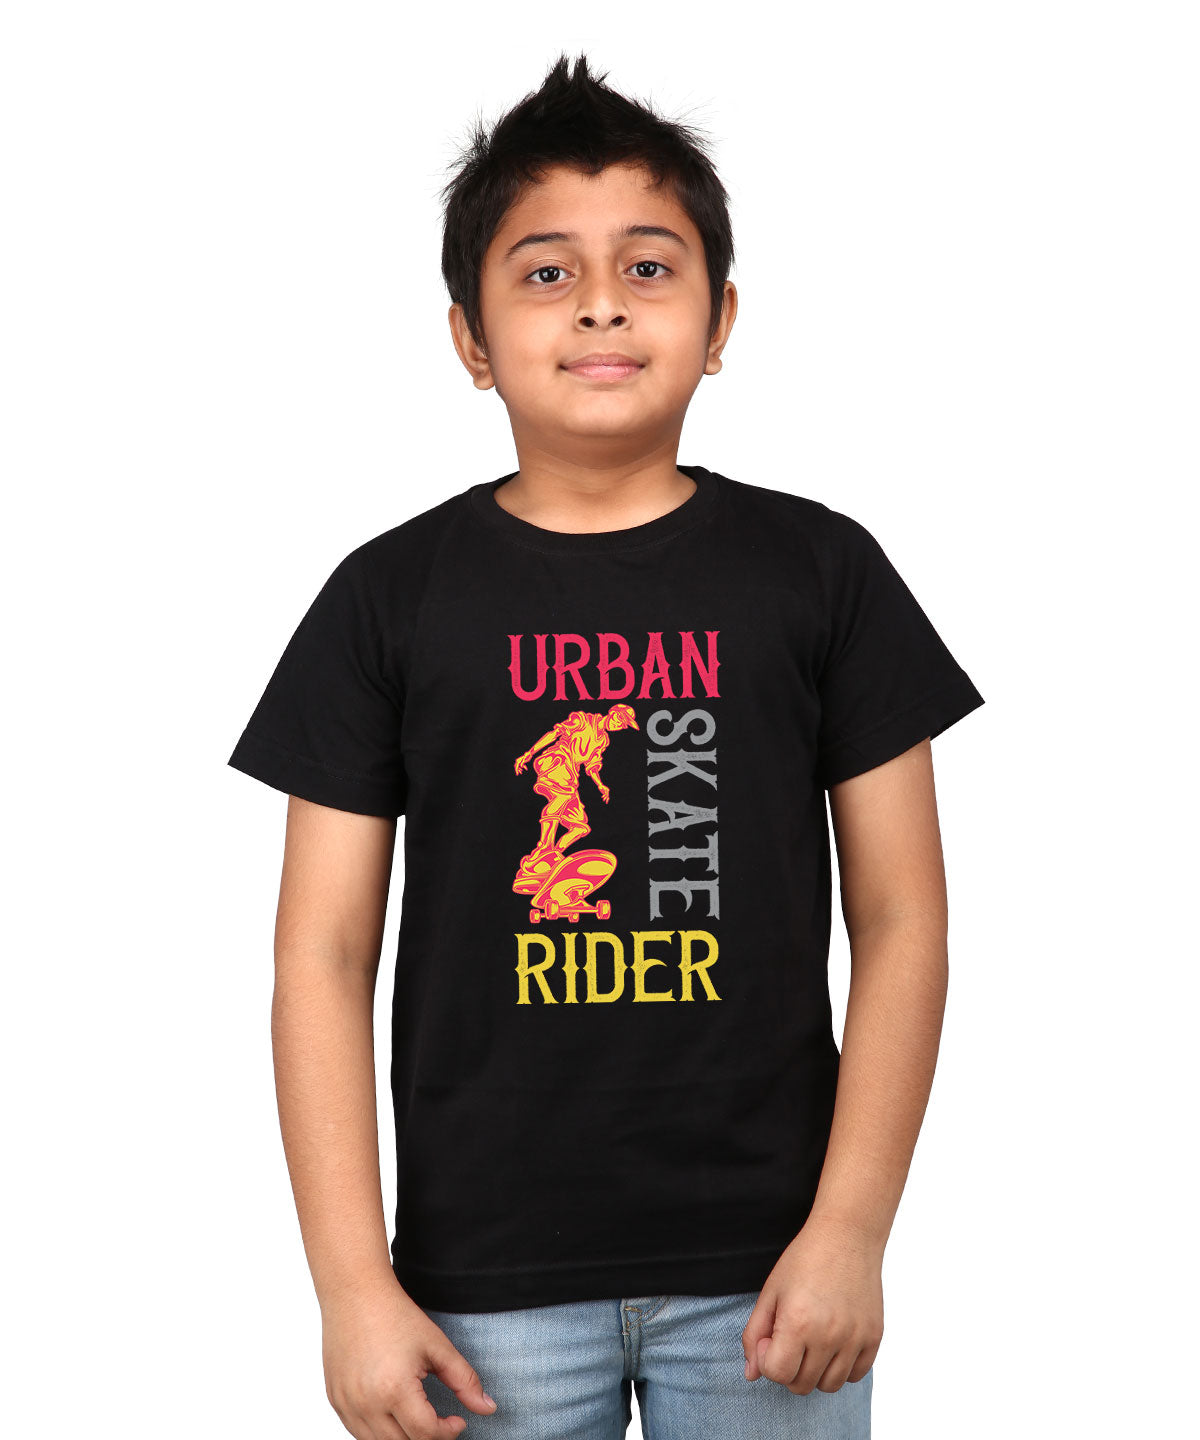 Urban Skate Rider - Premium Round Neck Cotton Tees for Juniors - Black